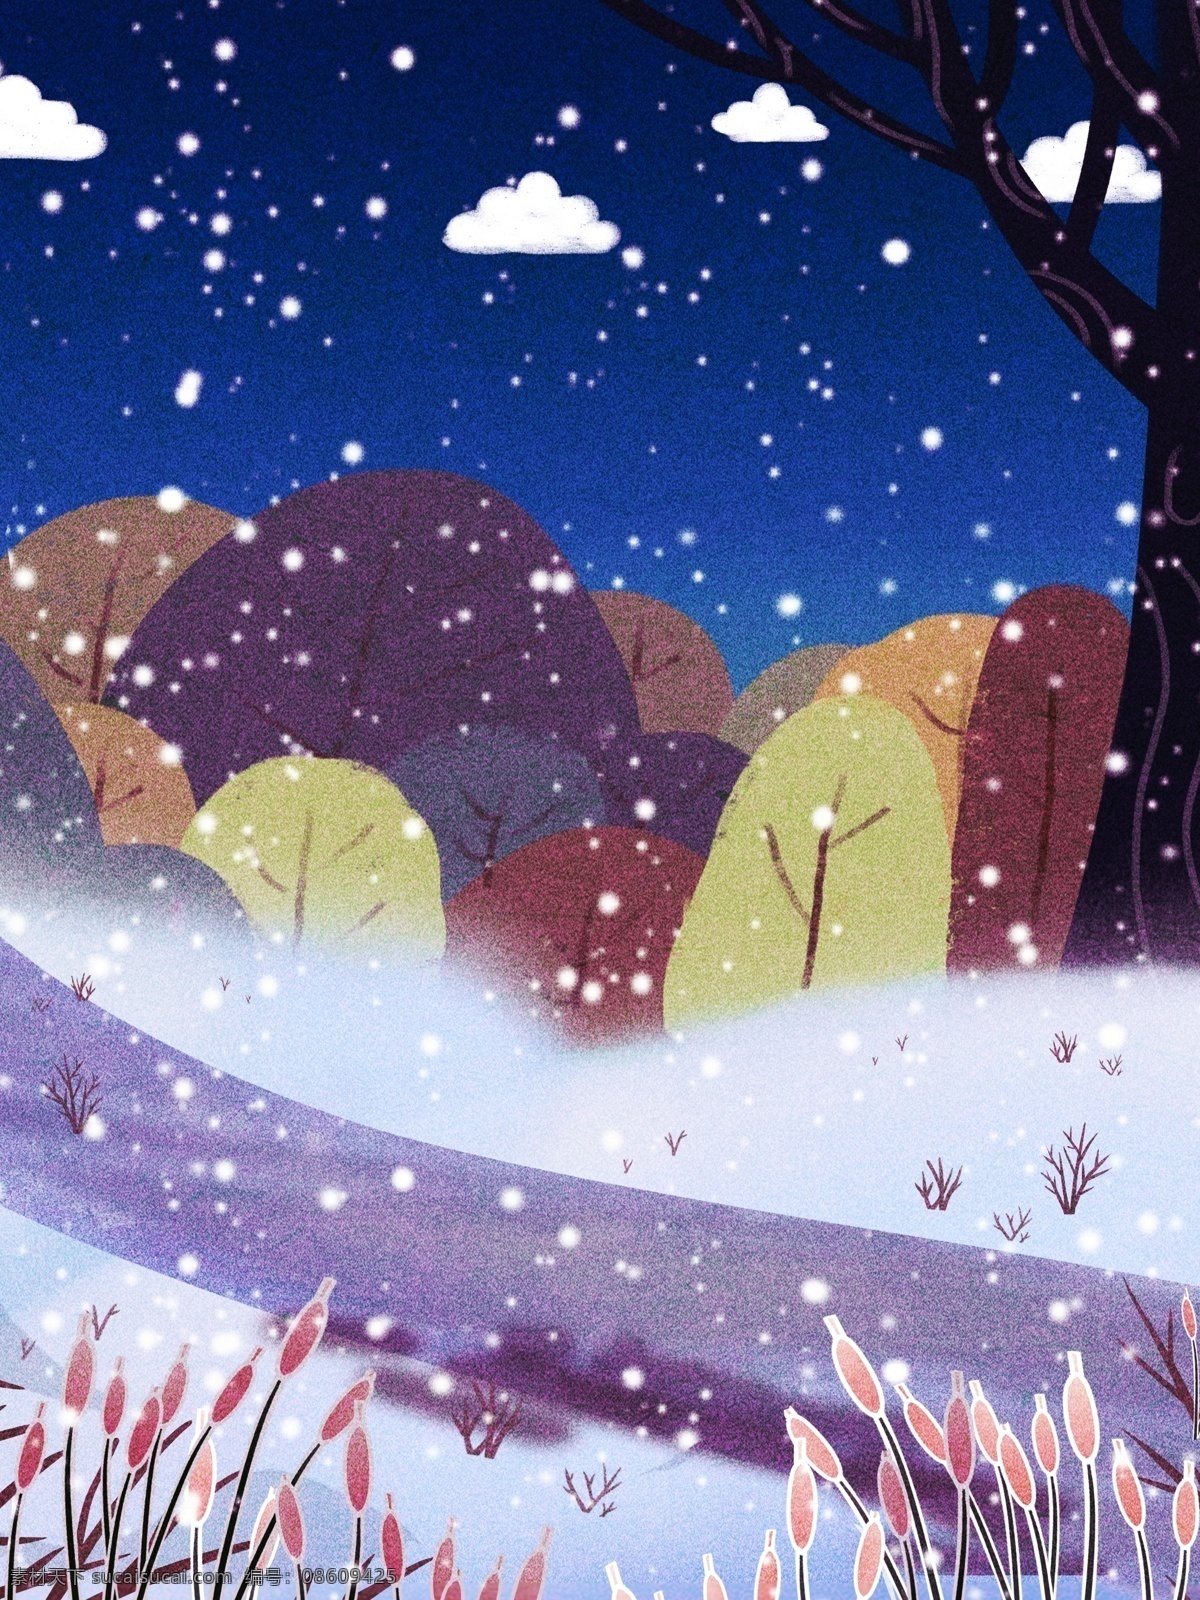 彩绘 冬季 下雪 树林 背景 雪花 冬天 背景设计 通用背景 背景展板 促销背景 背景图 创意